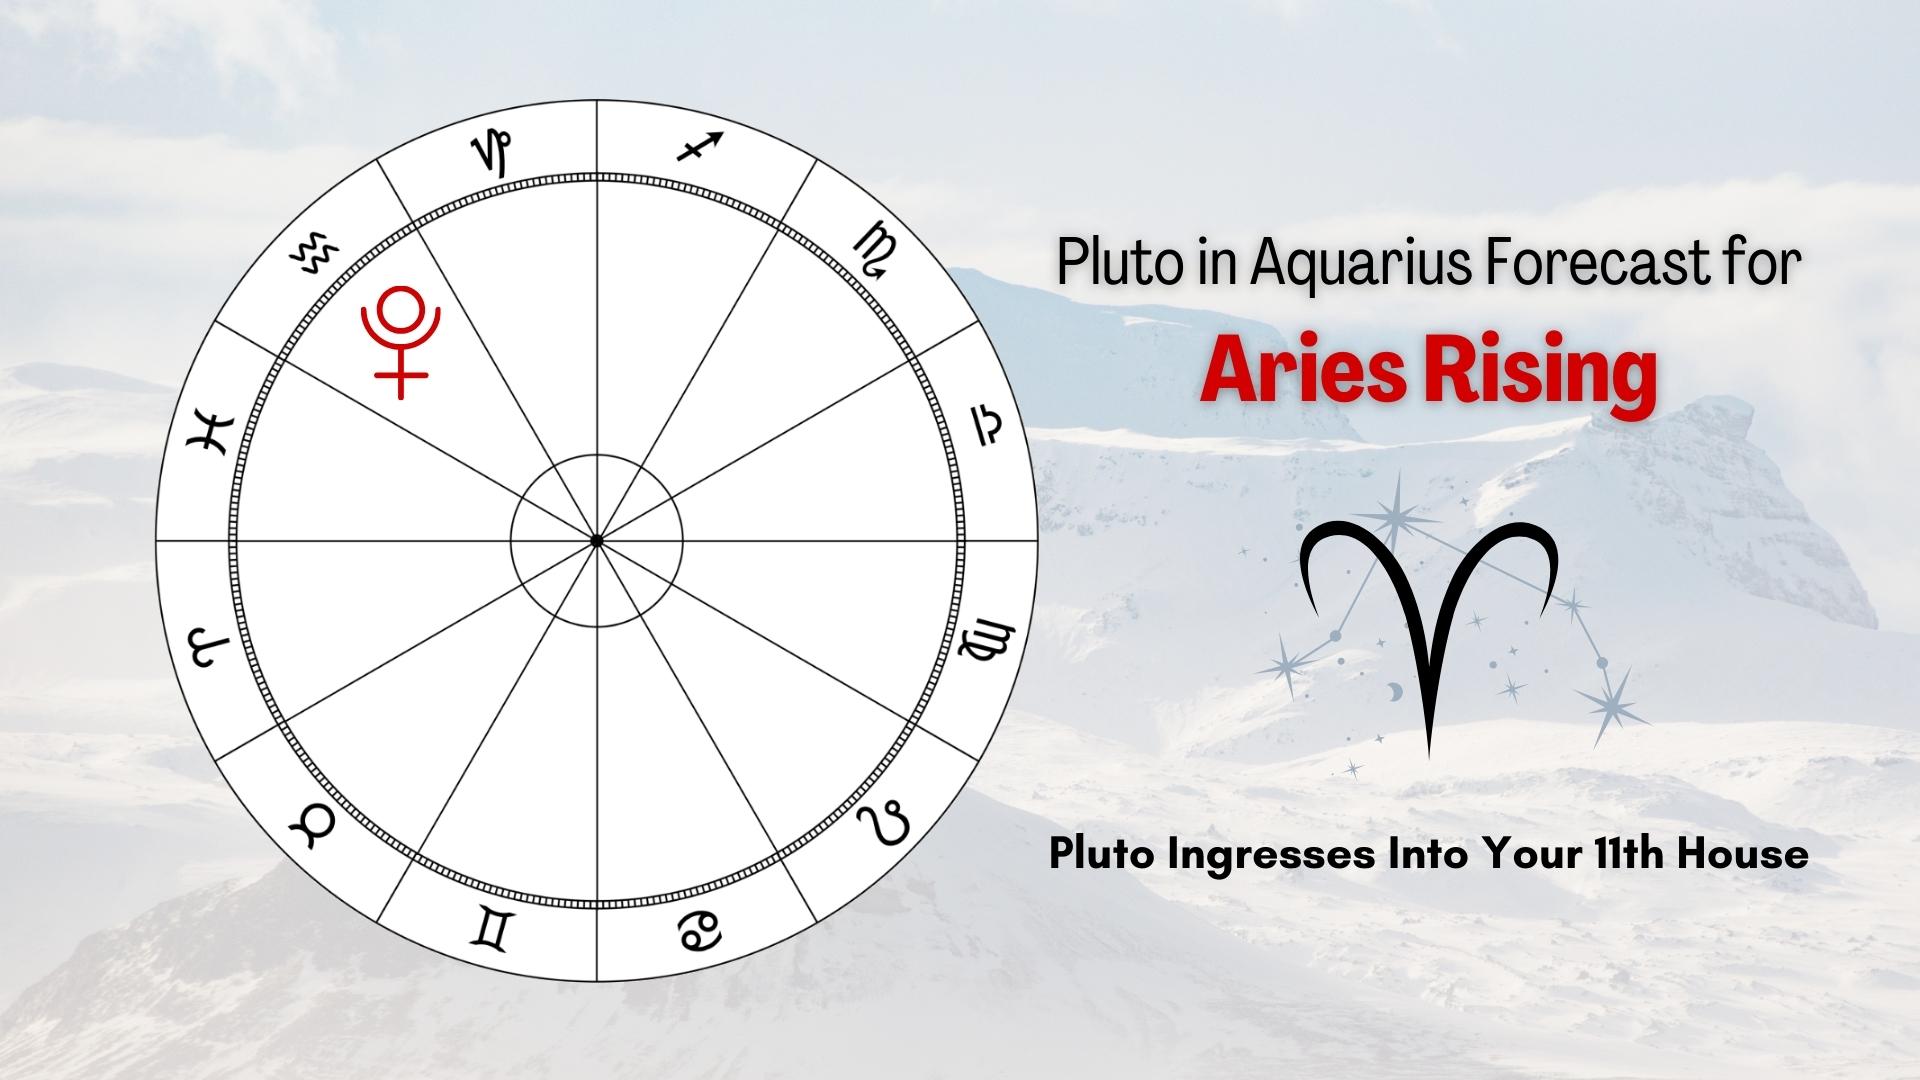 Pluto In Aquarius Forecast for Aries Rising